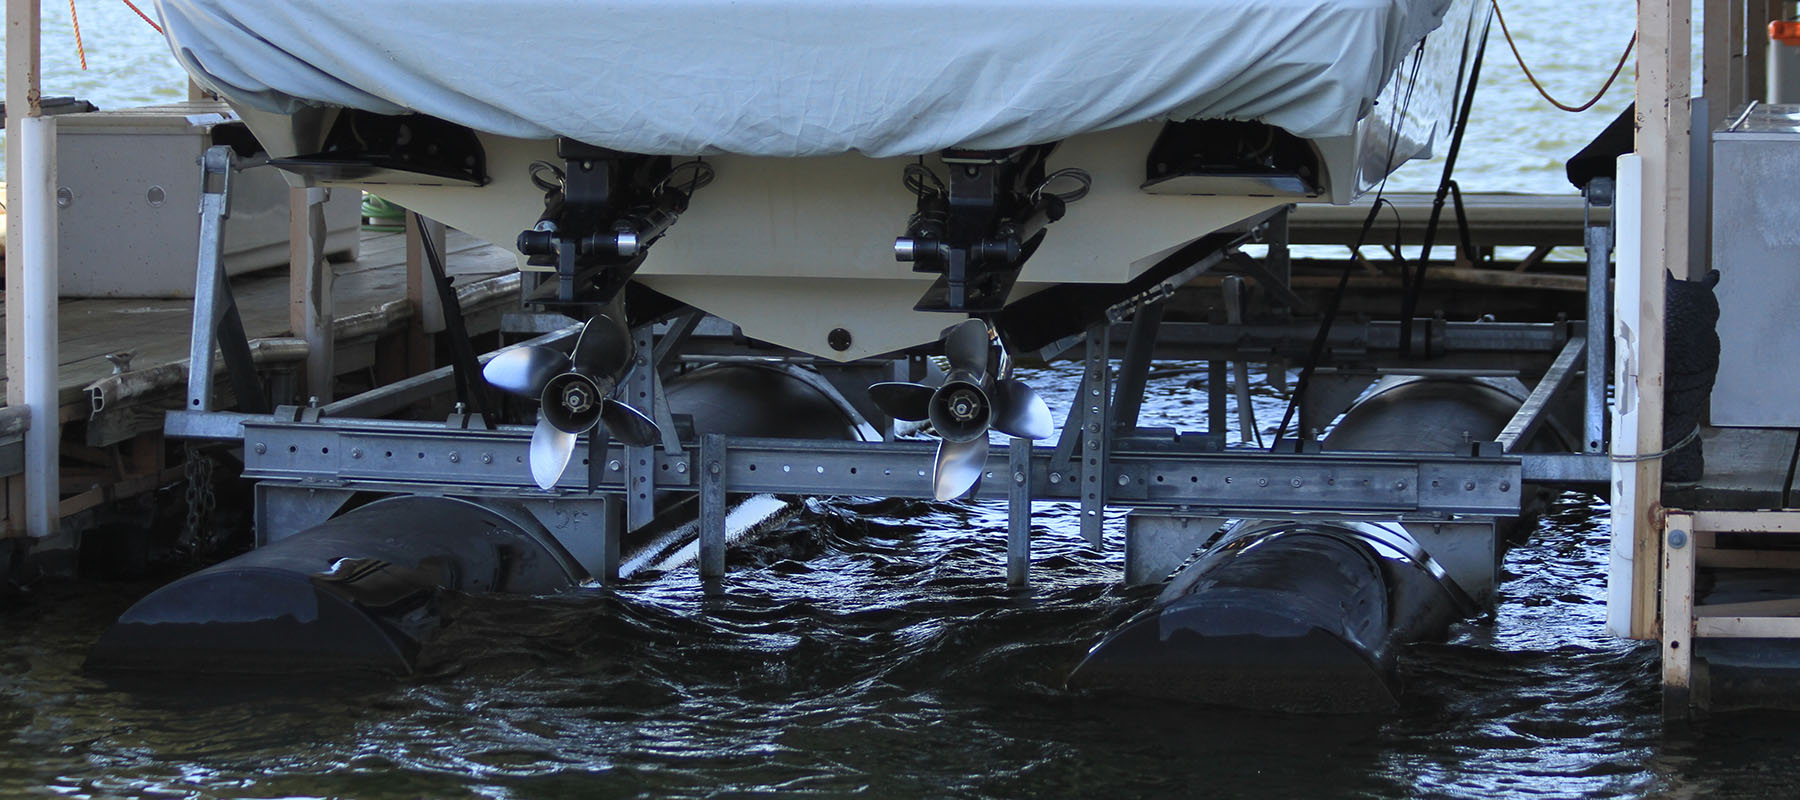 10,000 lb boat lift at the Lake of the Ozarks